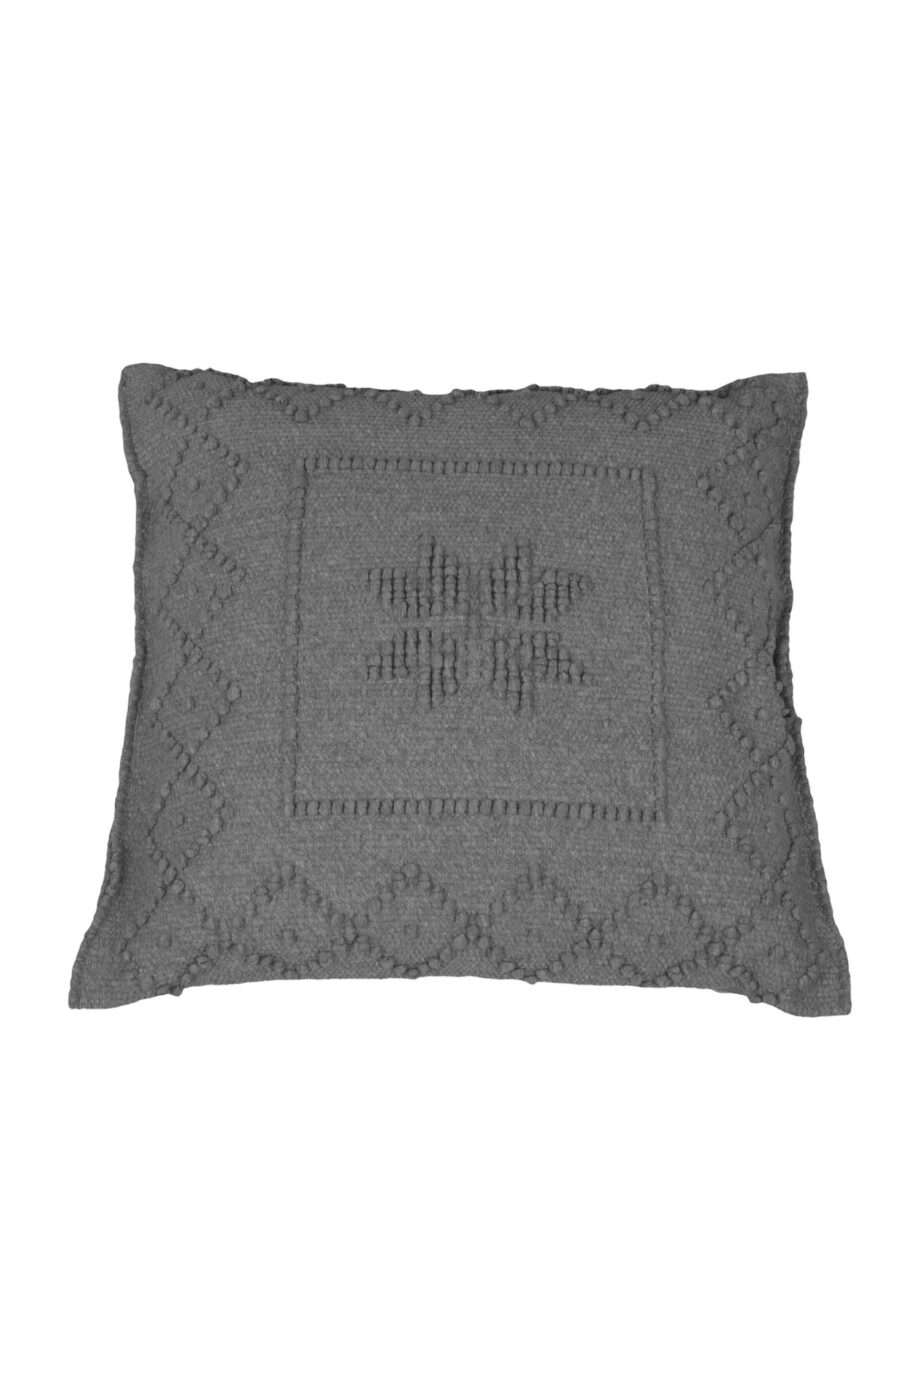 star grey woven cotton pillowcase medium